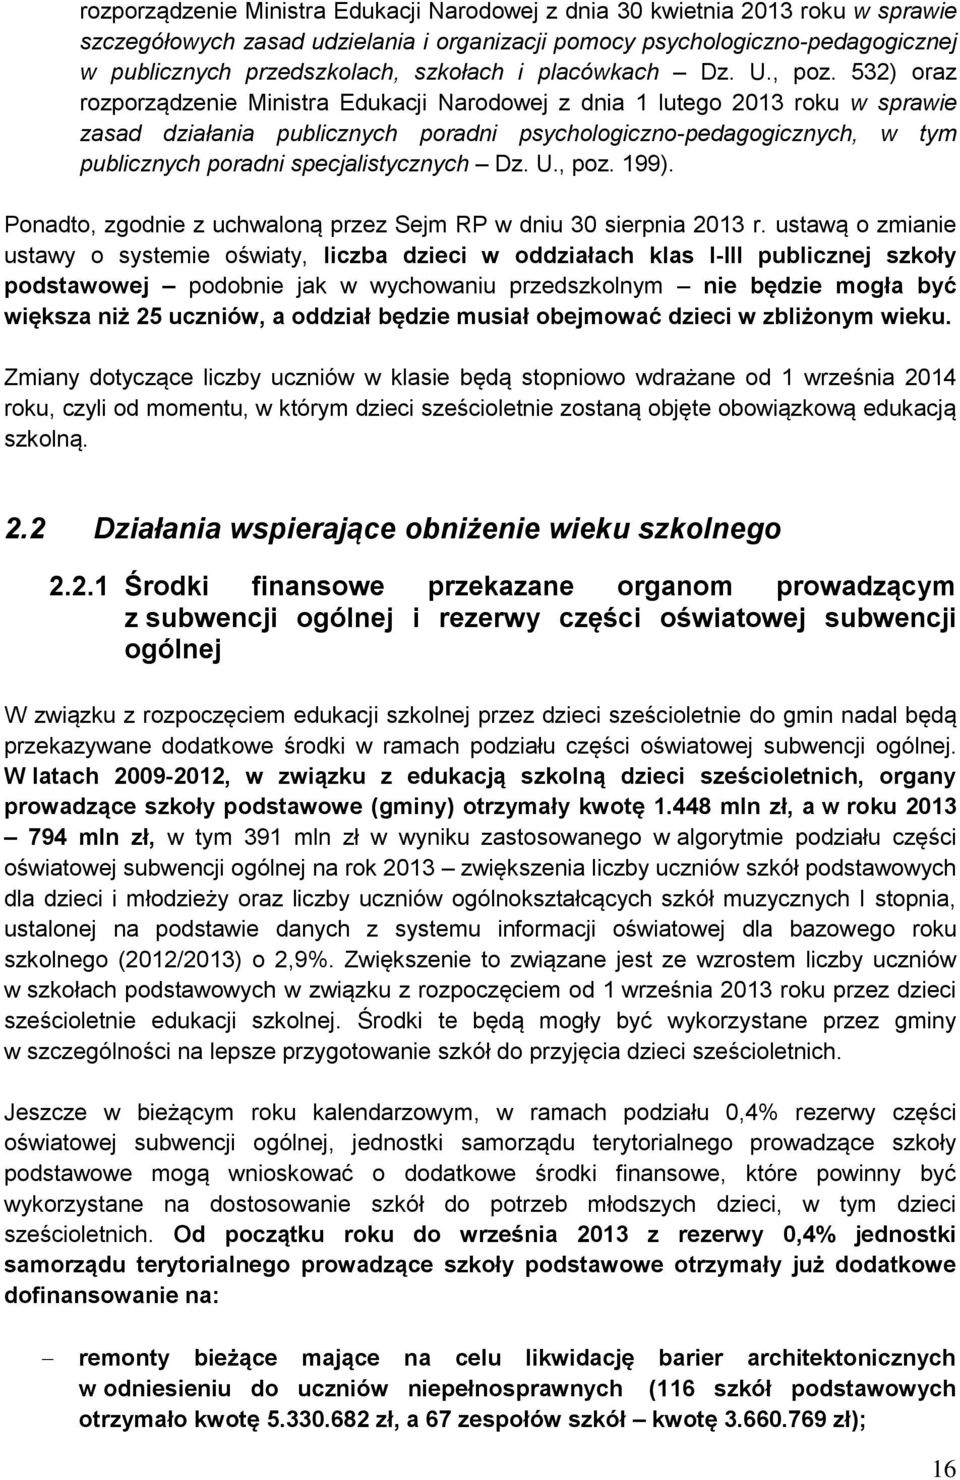 532) oraz rozporządzenie Ministra Edukacji Narodowej z dnia 1 lutego 2013 roku w sprawie zasad działania publicznych poradni psychologiczno-pedagogicznych, w tym publicznych poradni specjalistycznych